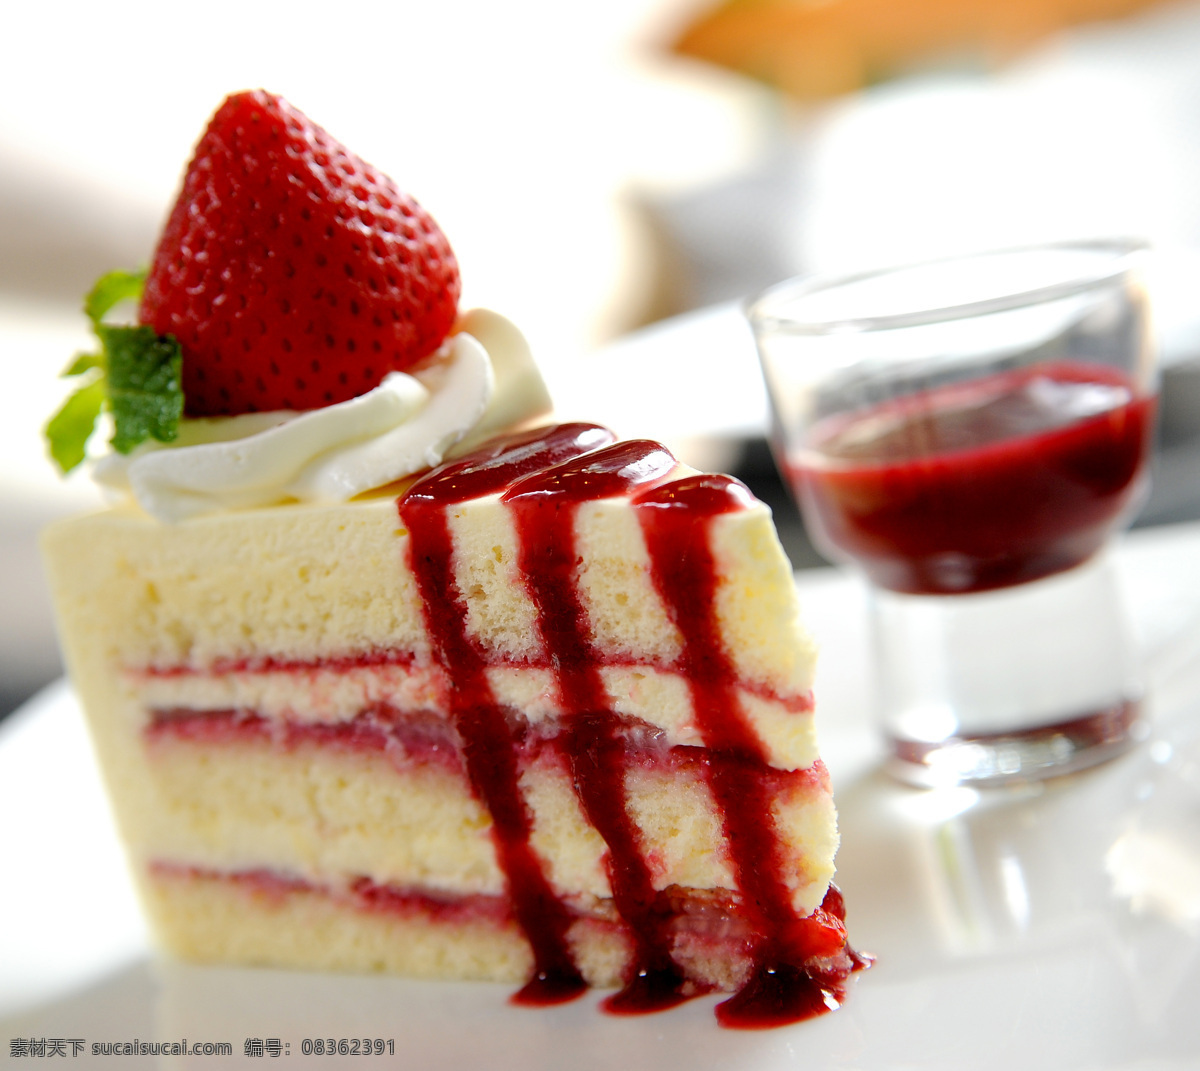 美味 草莓 蛋糕 草莓蛋糕 水果蛋糕 奶油蛋糕 美食 甜品 食物 生日蛋糕图片 餐饮美食